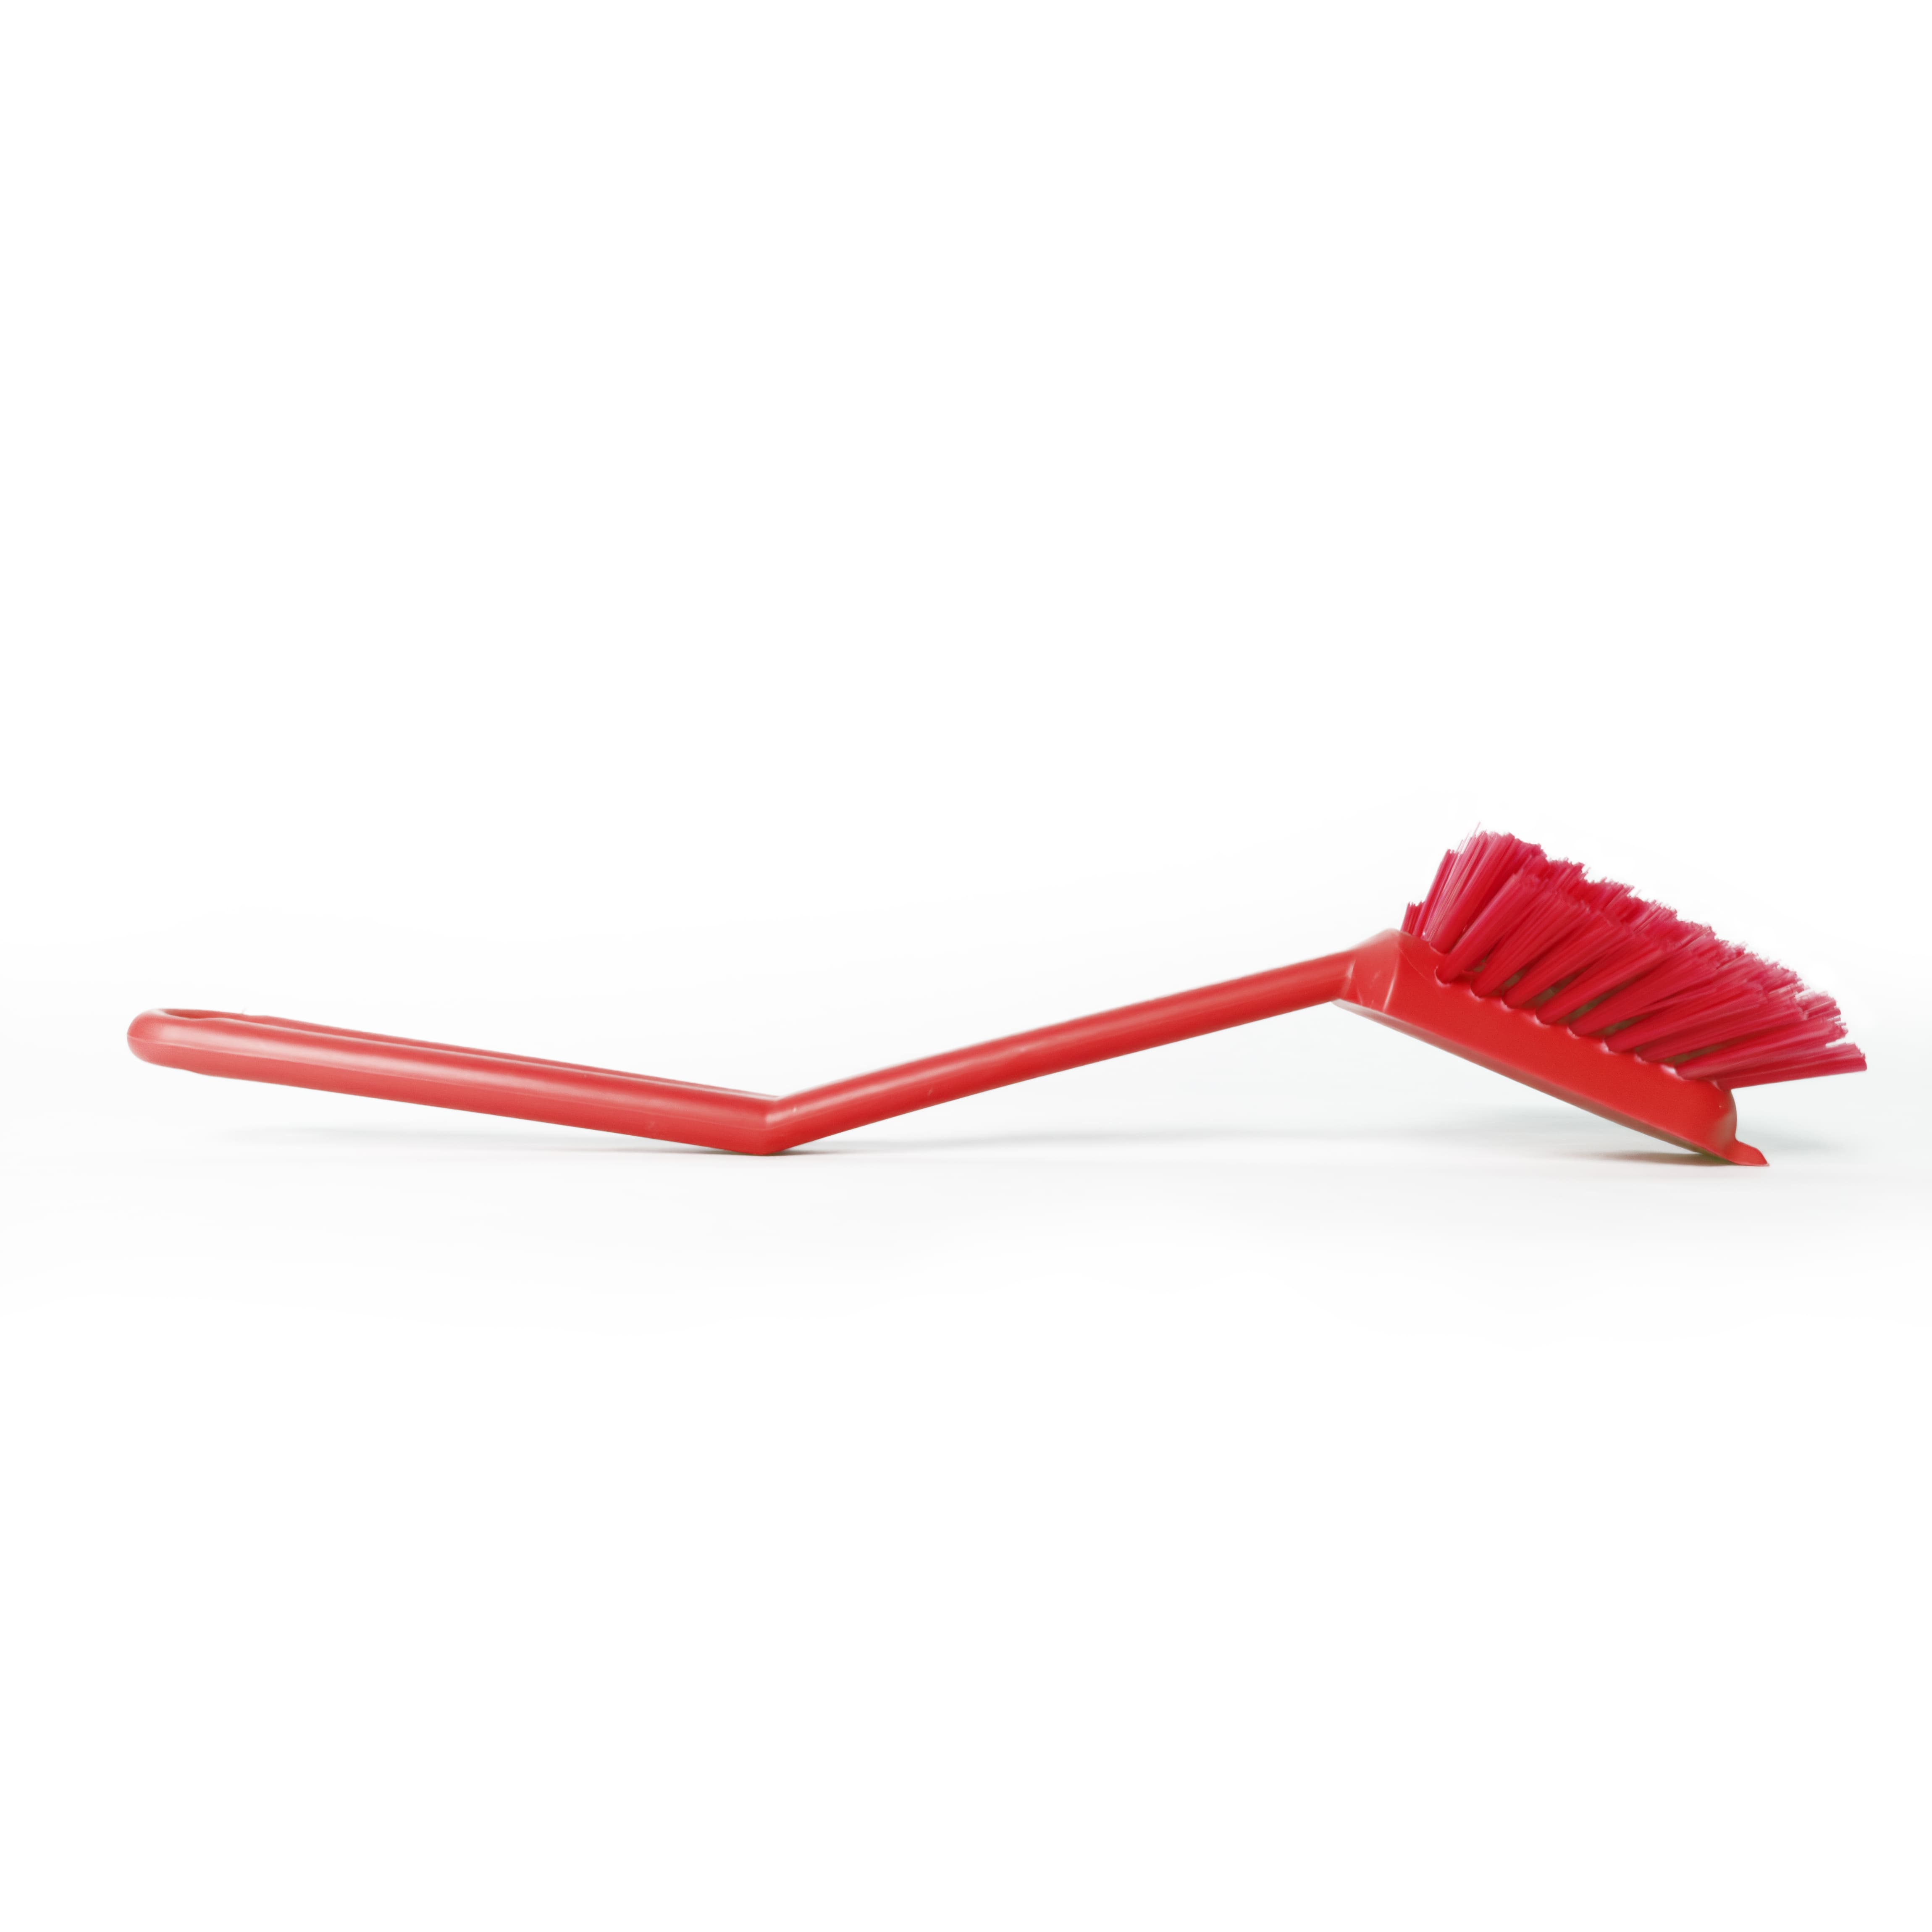 Щетка HACCPER с короткой ручкой для мытья посуды, красная